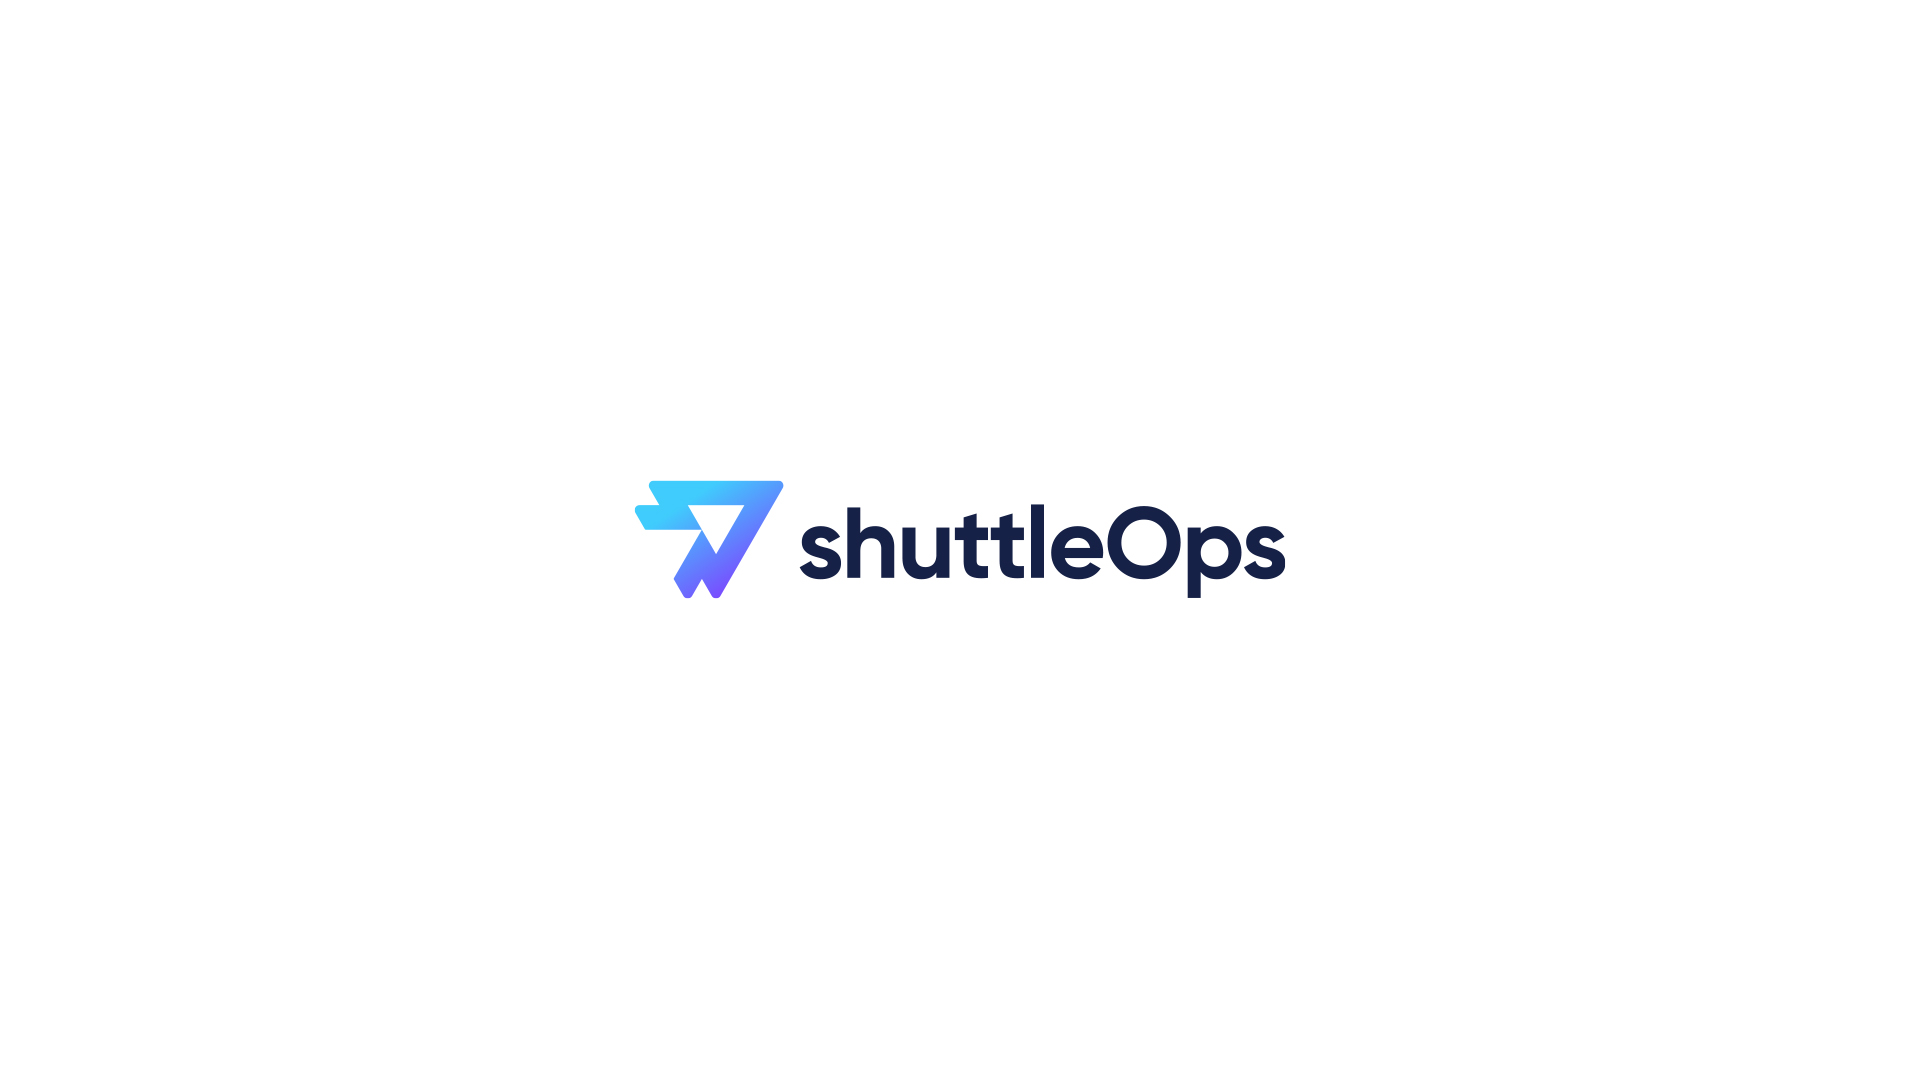 ShuttleOps Development App Brand Case Study